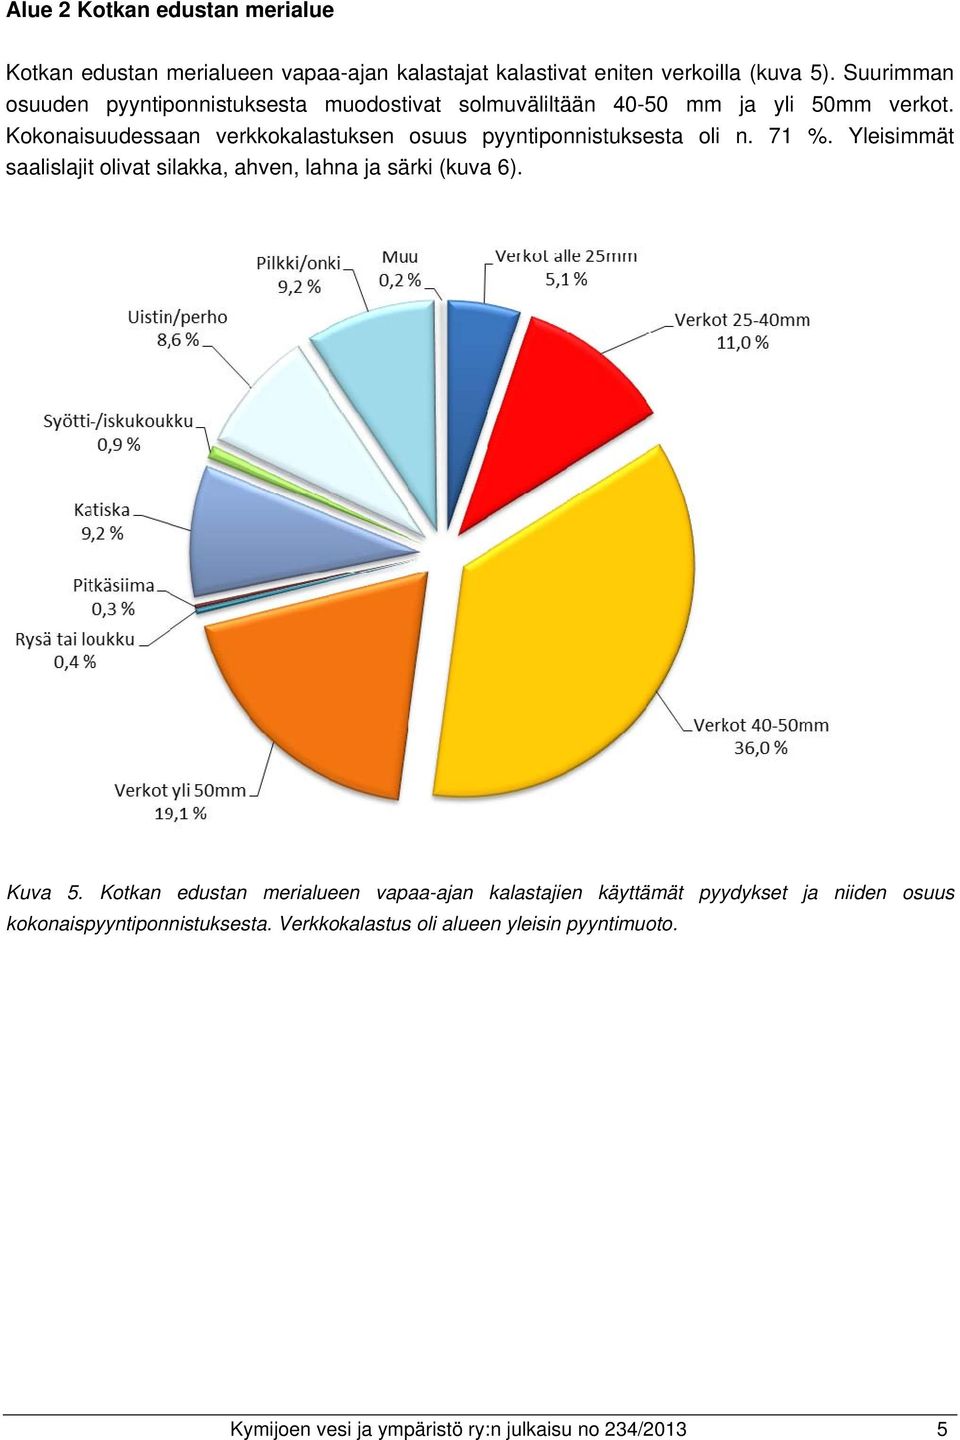 Kokonaisuudessaan verkkokalastuksen osuus pyyntiponnistuksesta oli n. 71 %. Yleisimmät saalislajit olivat silakka, ahven, lahna ja särki (kuva 6).